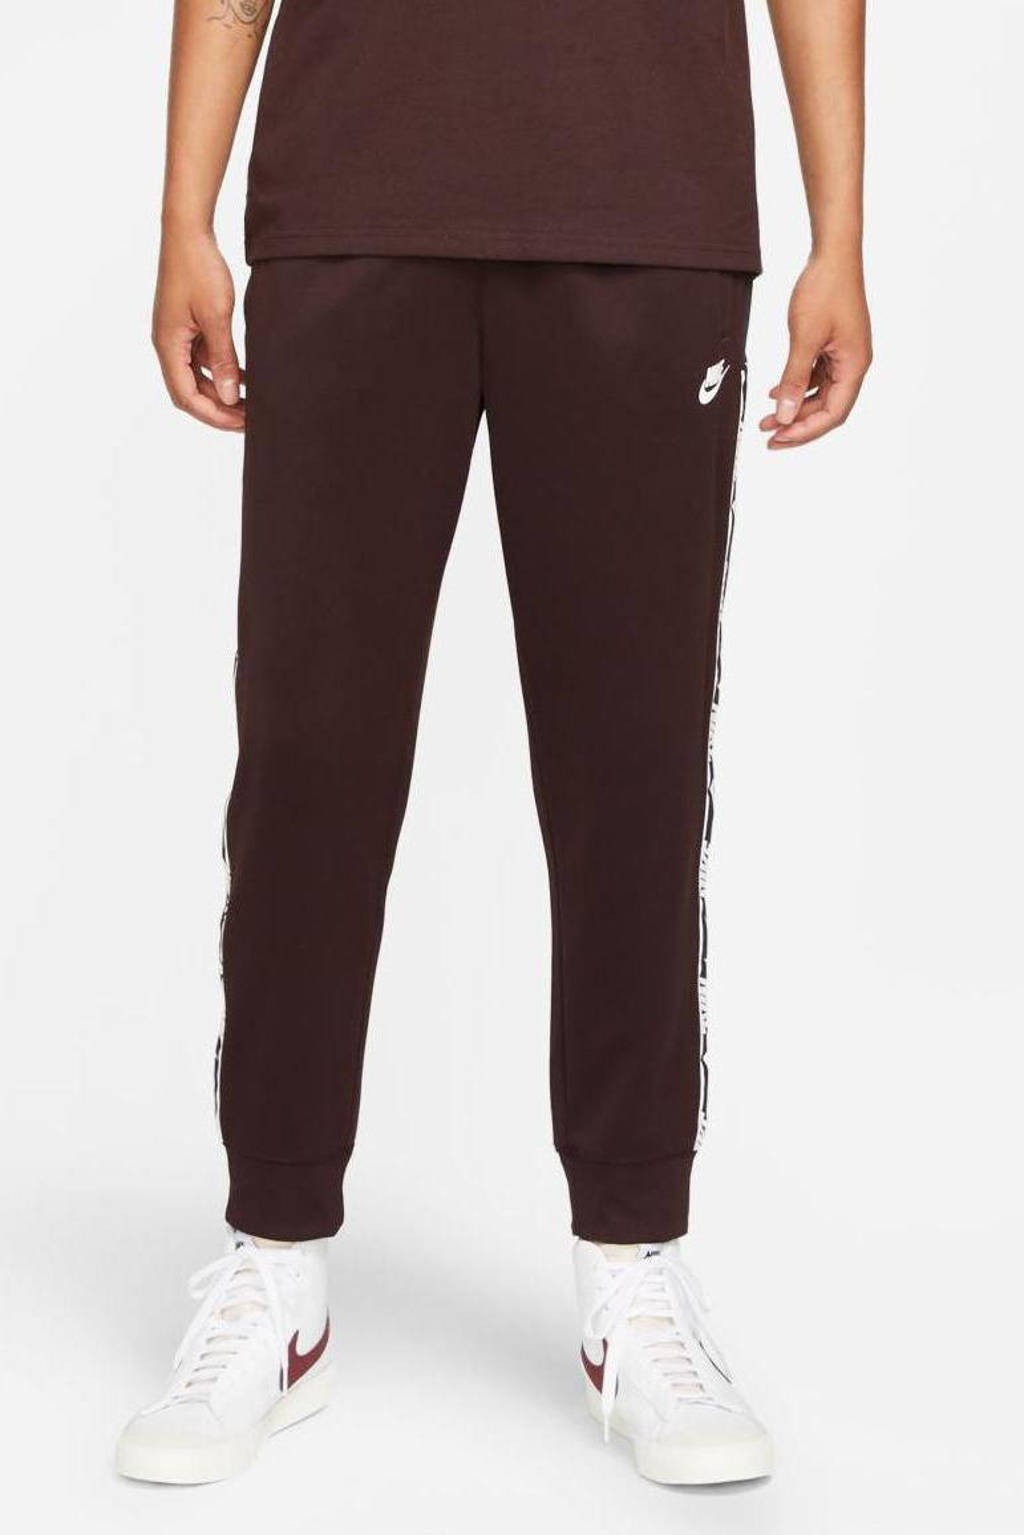 Bruine heren Nike regular fit joggingbroek van polyester met elastische tailleband met koord en logo dessin